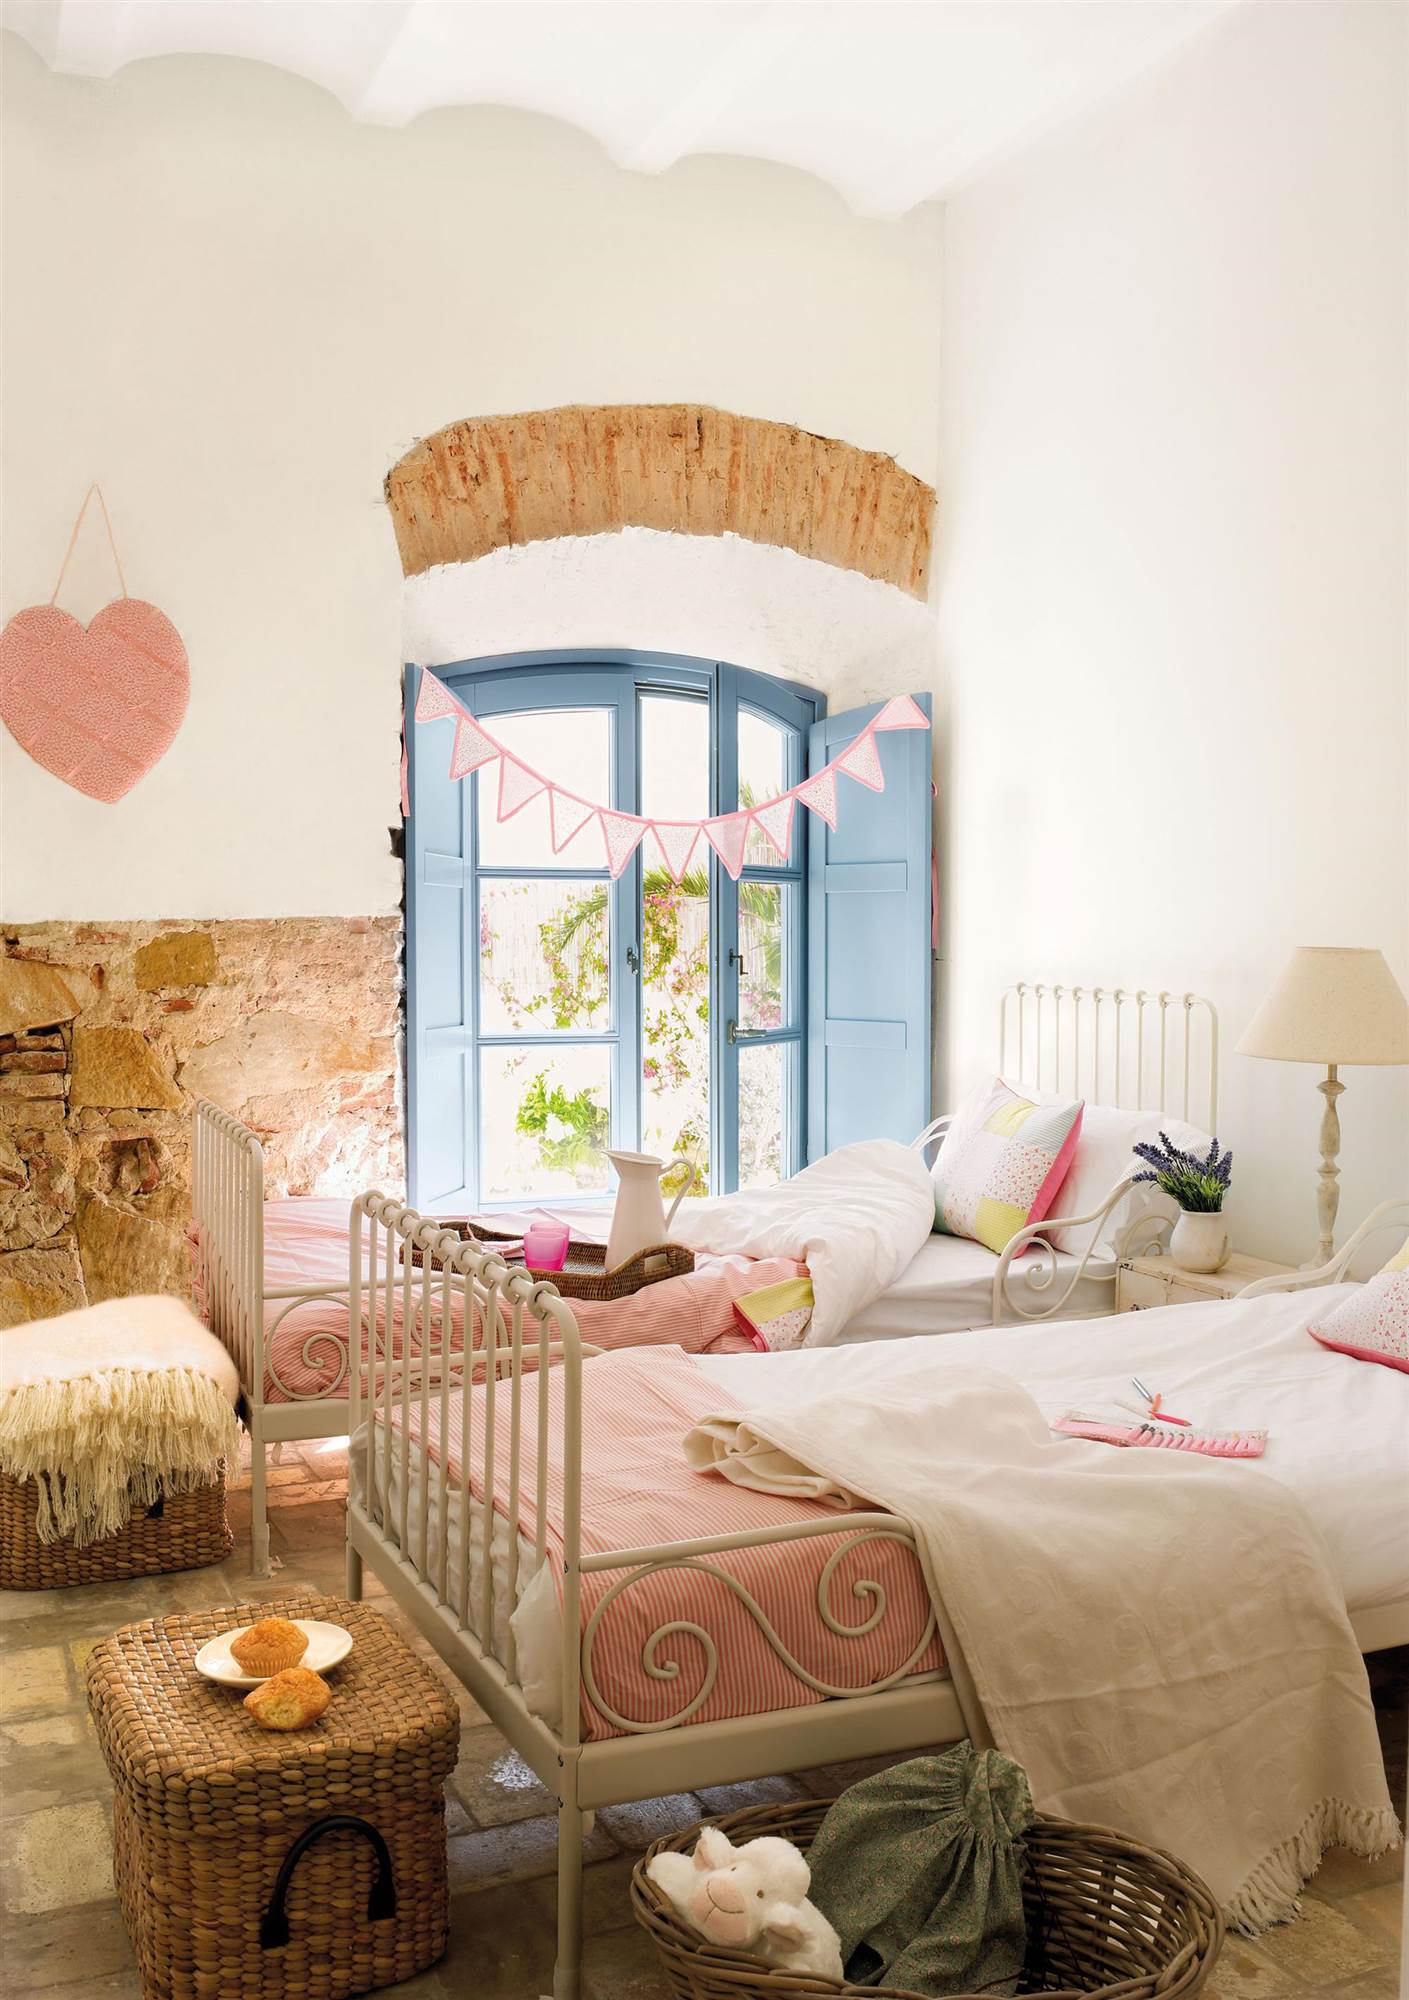 Dormitorio infantil de estilo rústico con camas idénticas, cestos de fibra trenzada y venana azul. 